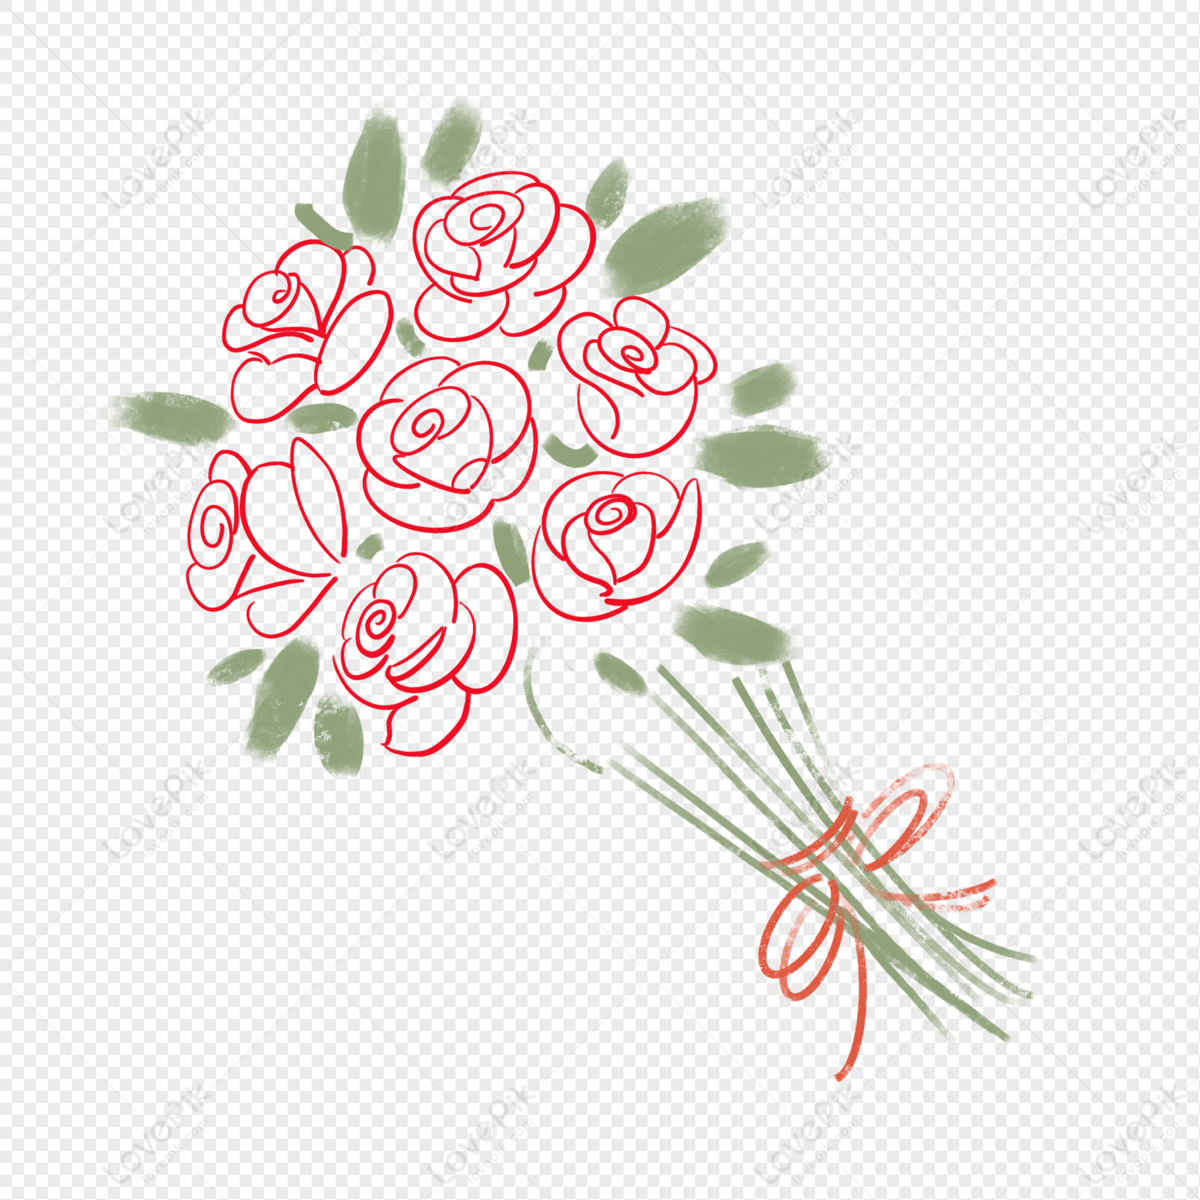 Tạo hình vẽ bó hoa hồng cho tình yêu và tình bạn